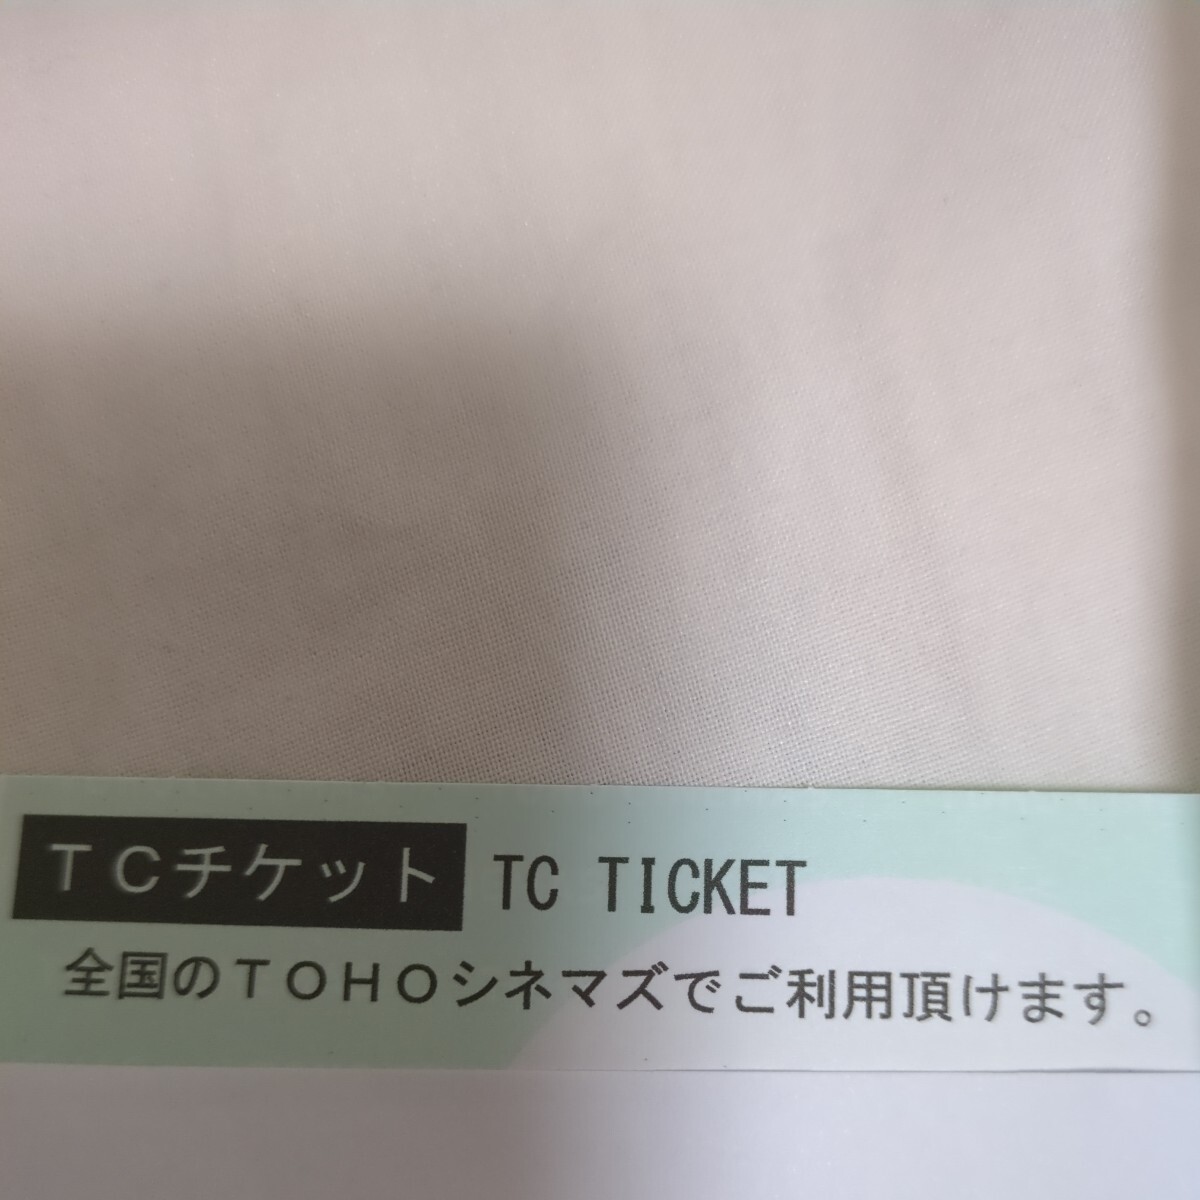 TOHOシネマズ TCチケット 1枚  即決 (8枚出品しています)の画像1